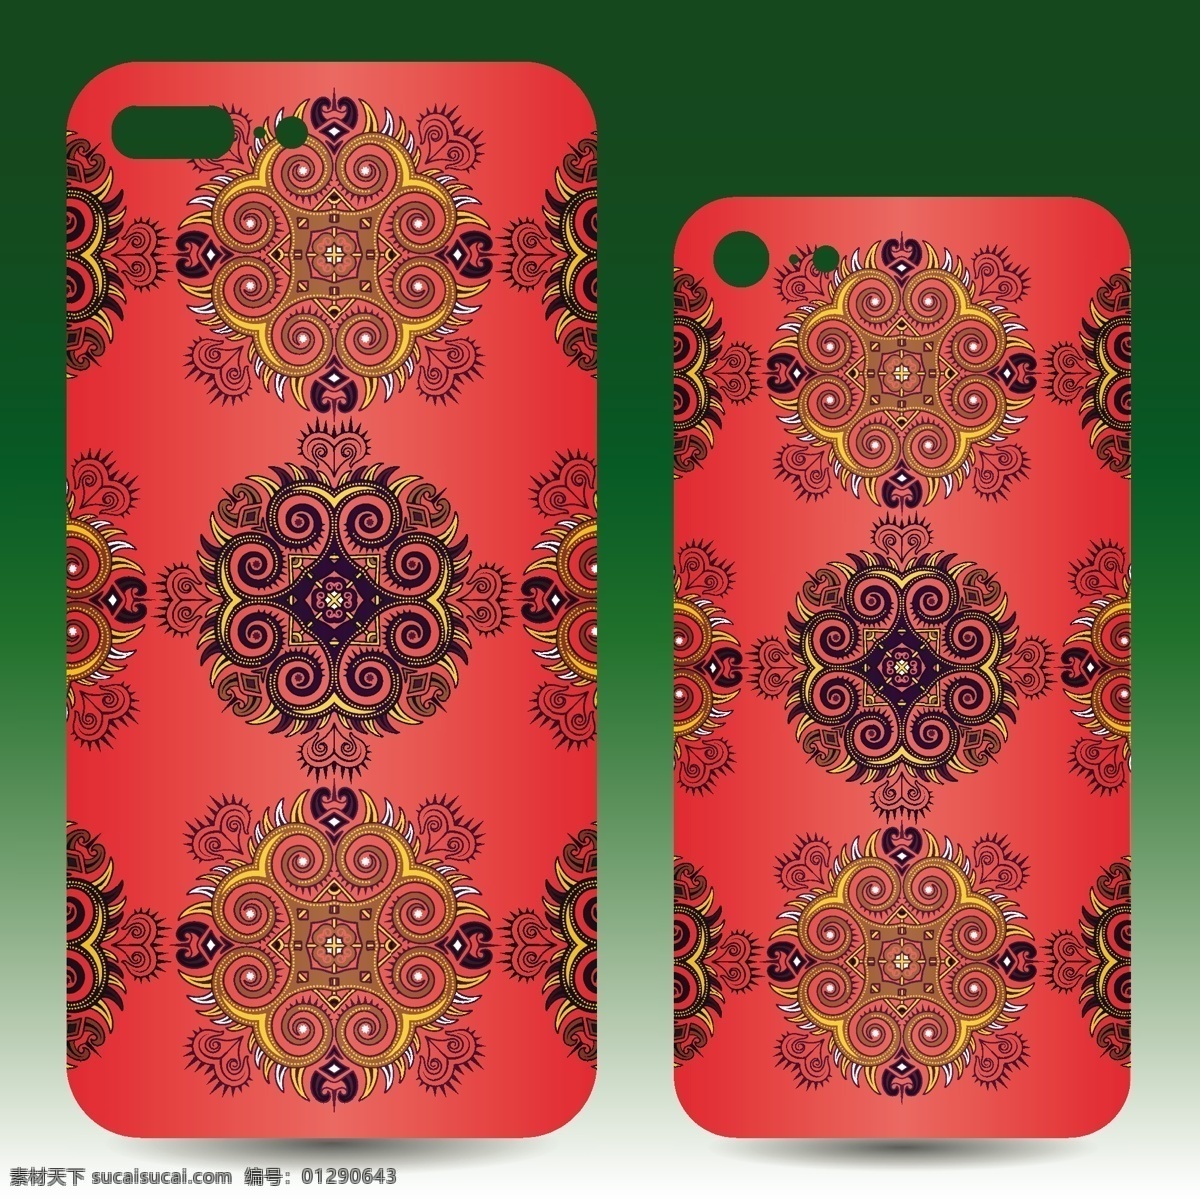 手机外壳设计 采购产品花卉 花卉 抽象 装饰 几何 电话 曼荼罗 移动 形状 颜色 阿拉伯语 印度 伊斯兰教 花卉装饰 移动电话